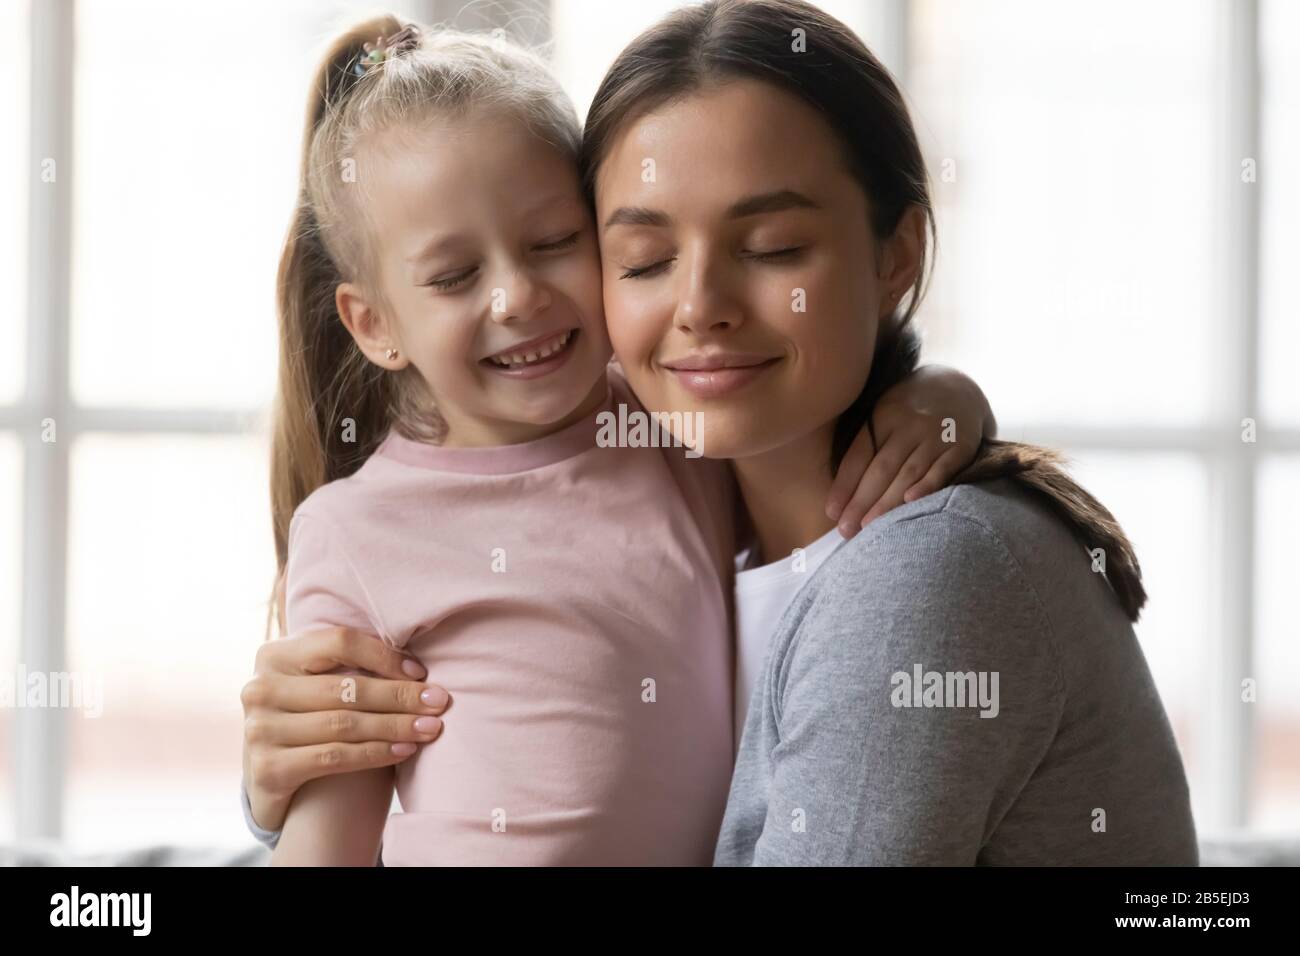 Amando piccola ragazza del capretto che abbraccia la nanny della babysitter della sorella maggiore. Foto Stock